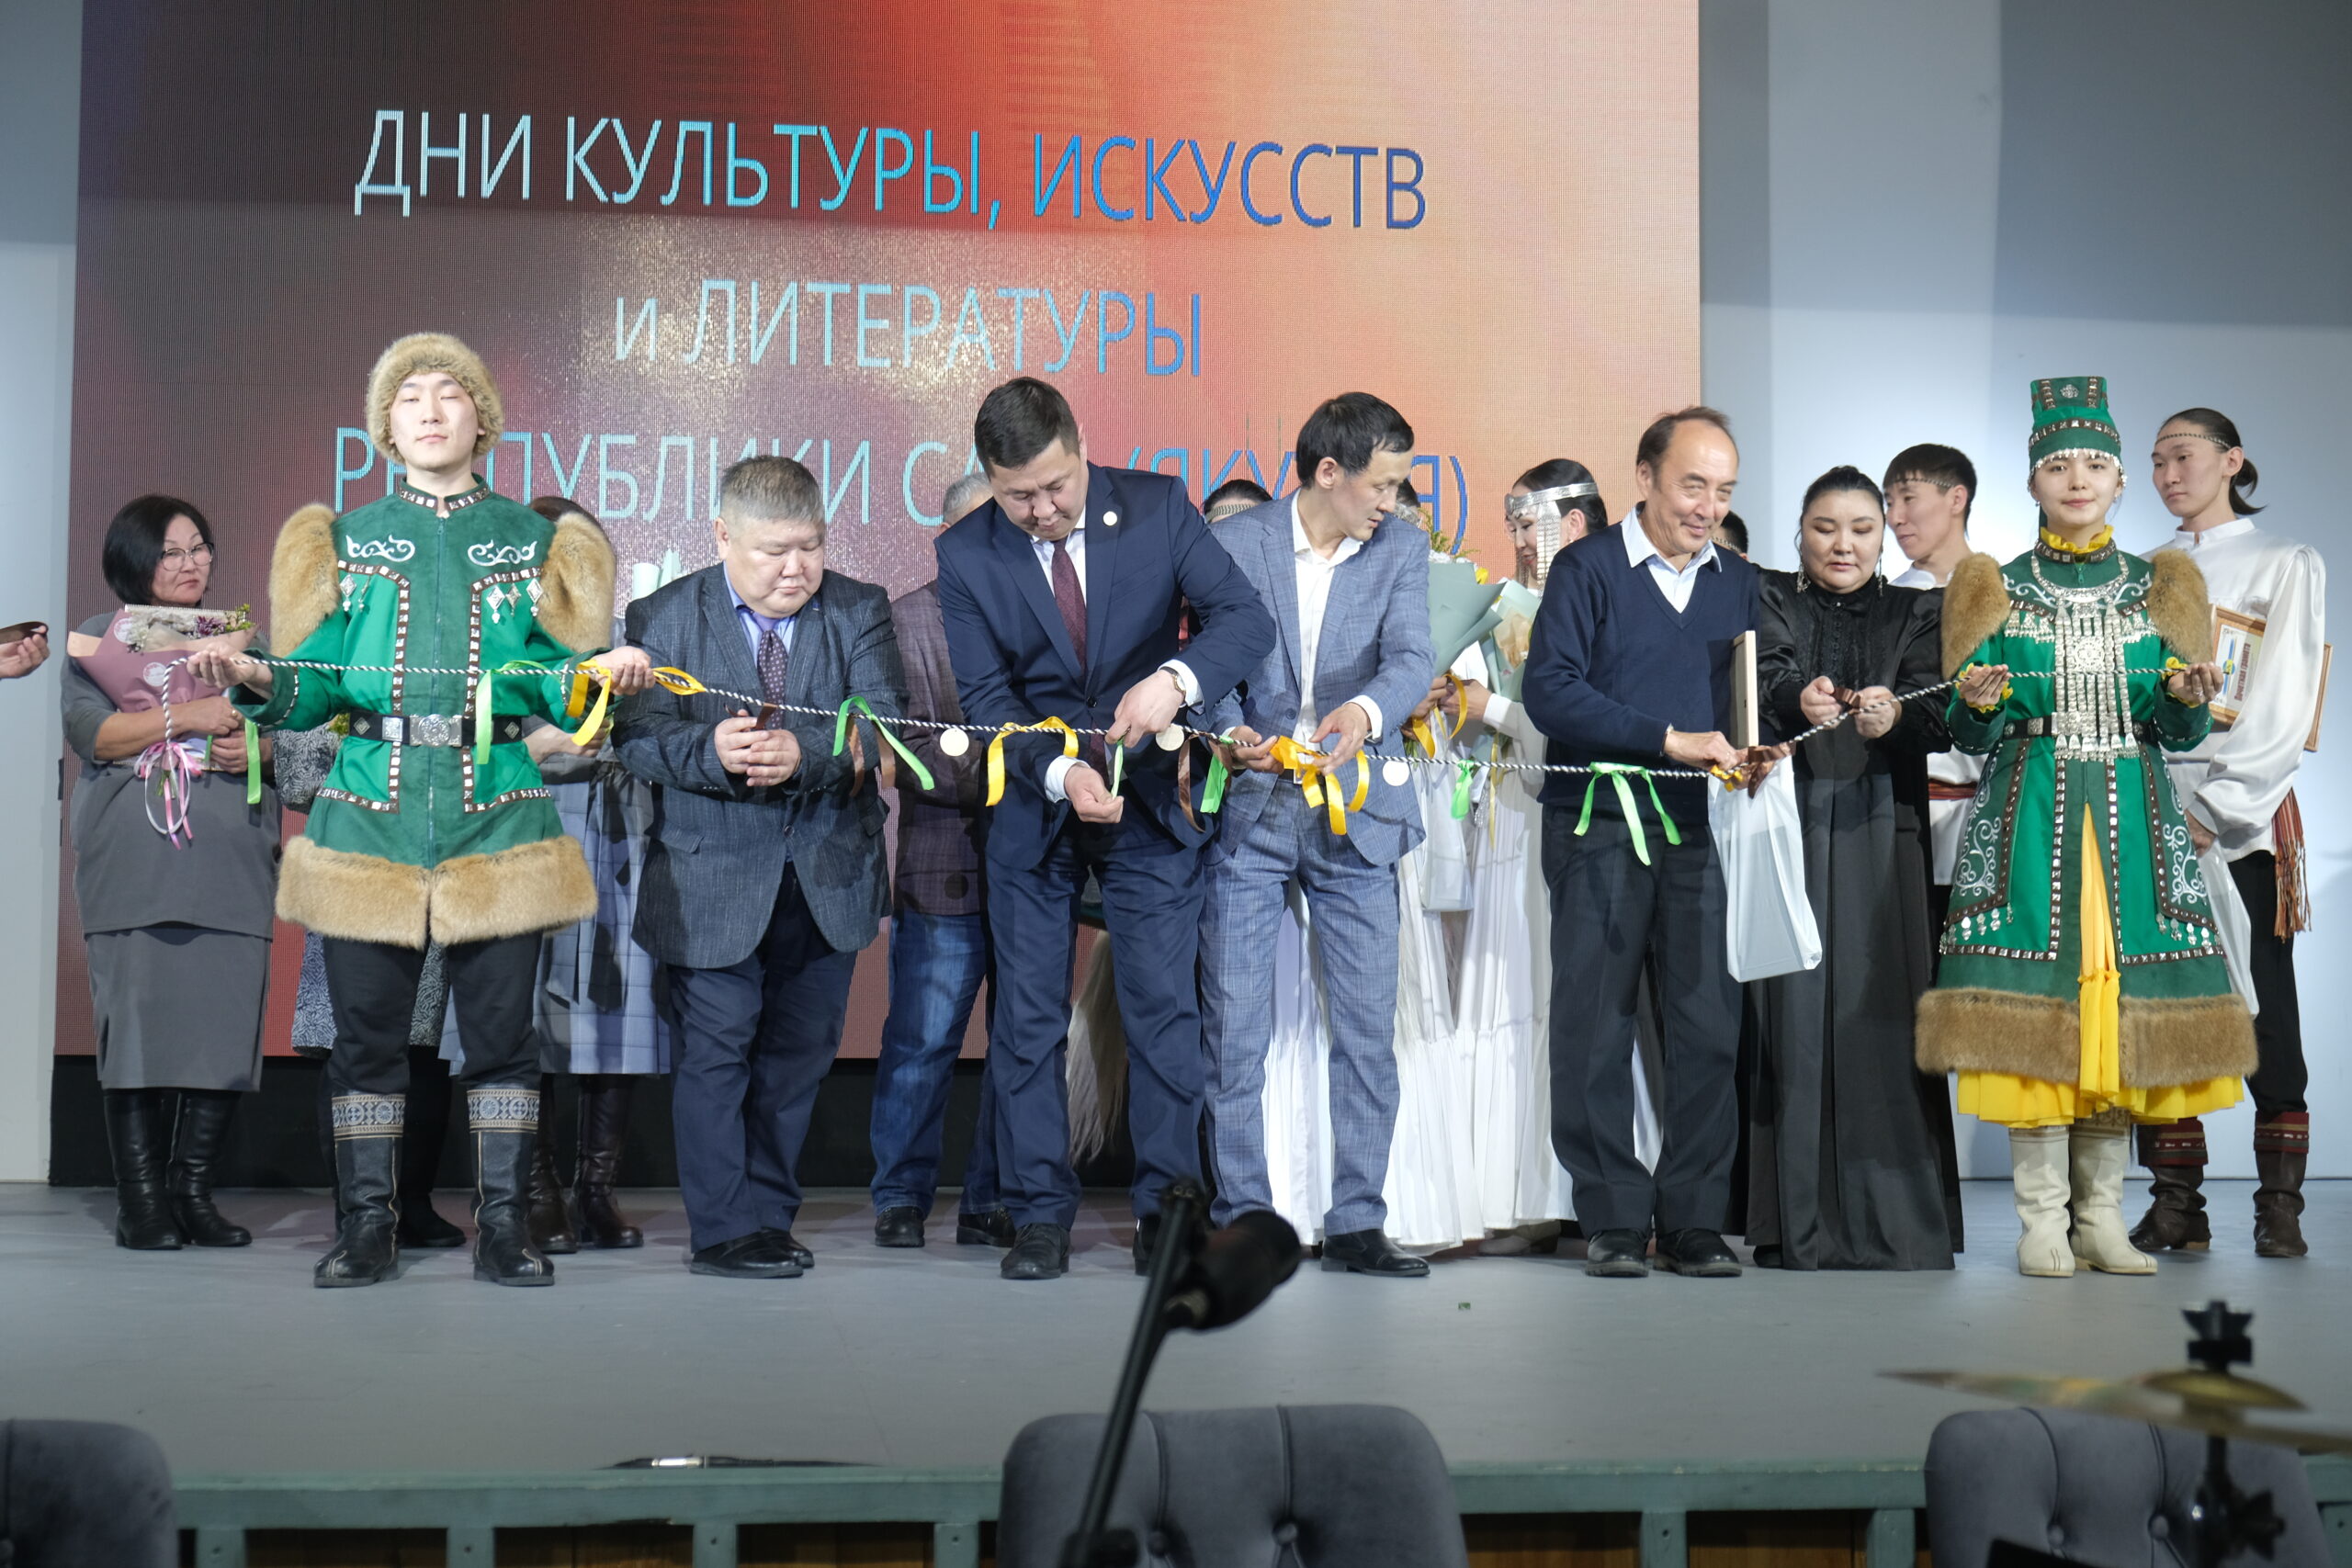 Торжественное закрытие Дней культуры, искусства и литературы Республики Саха (Якутия) в Чурапчинском улусе